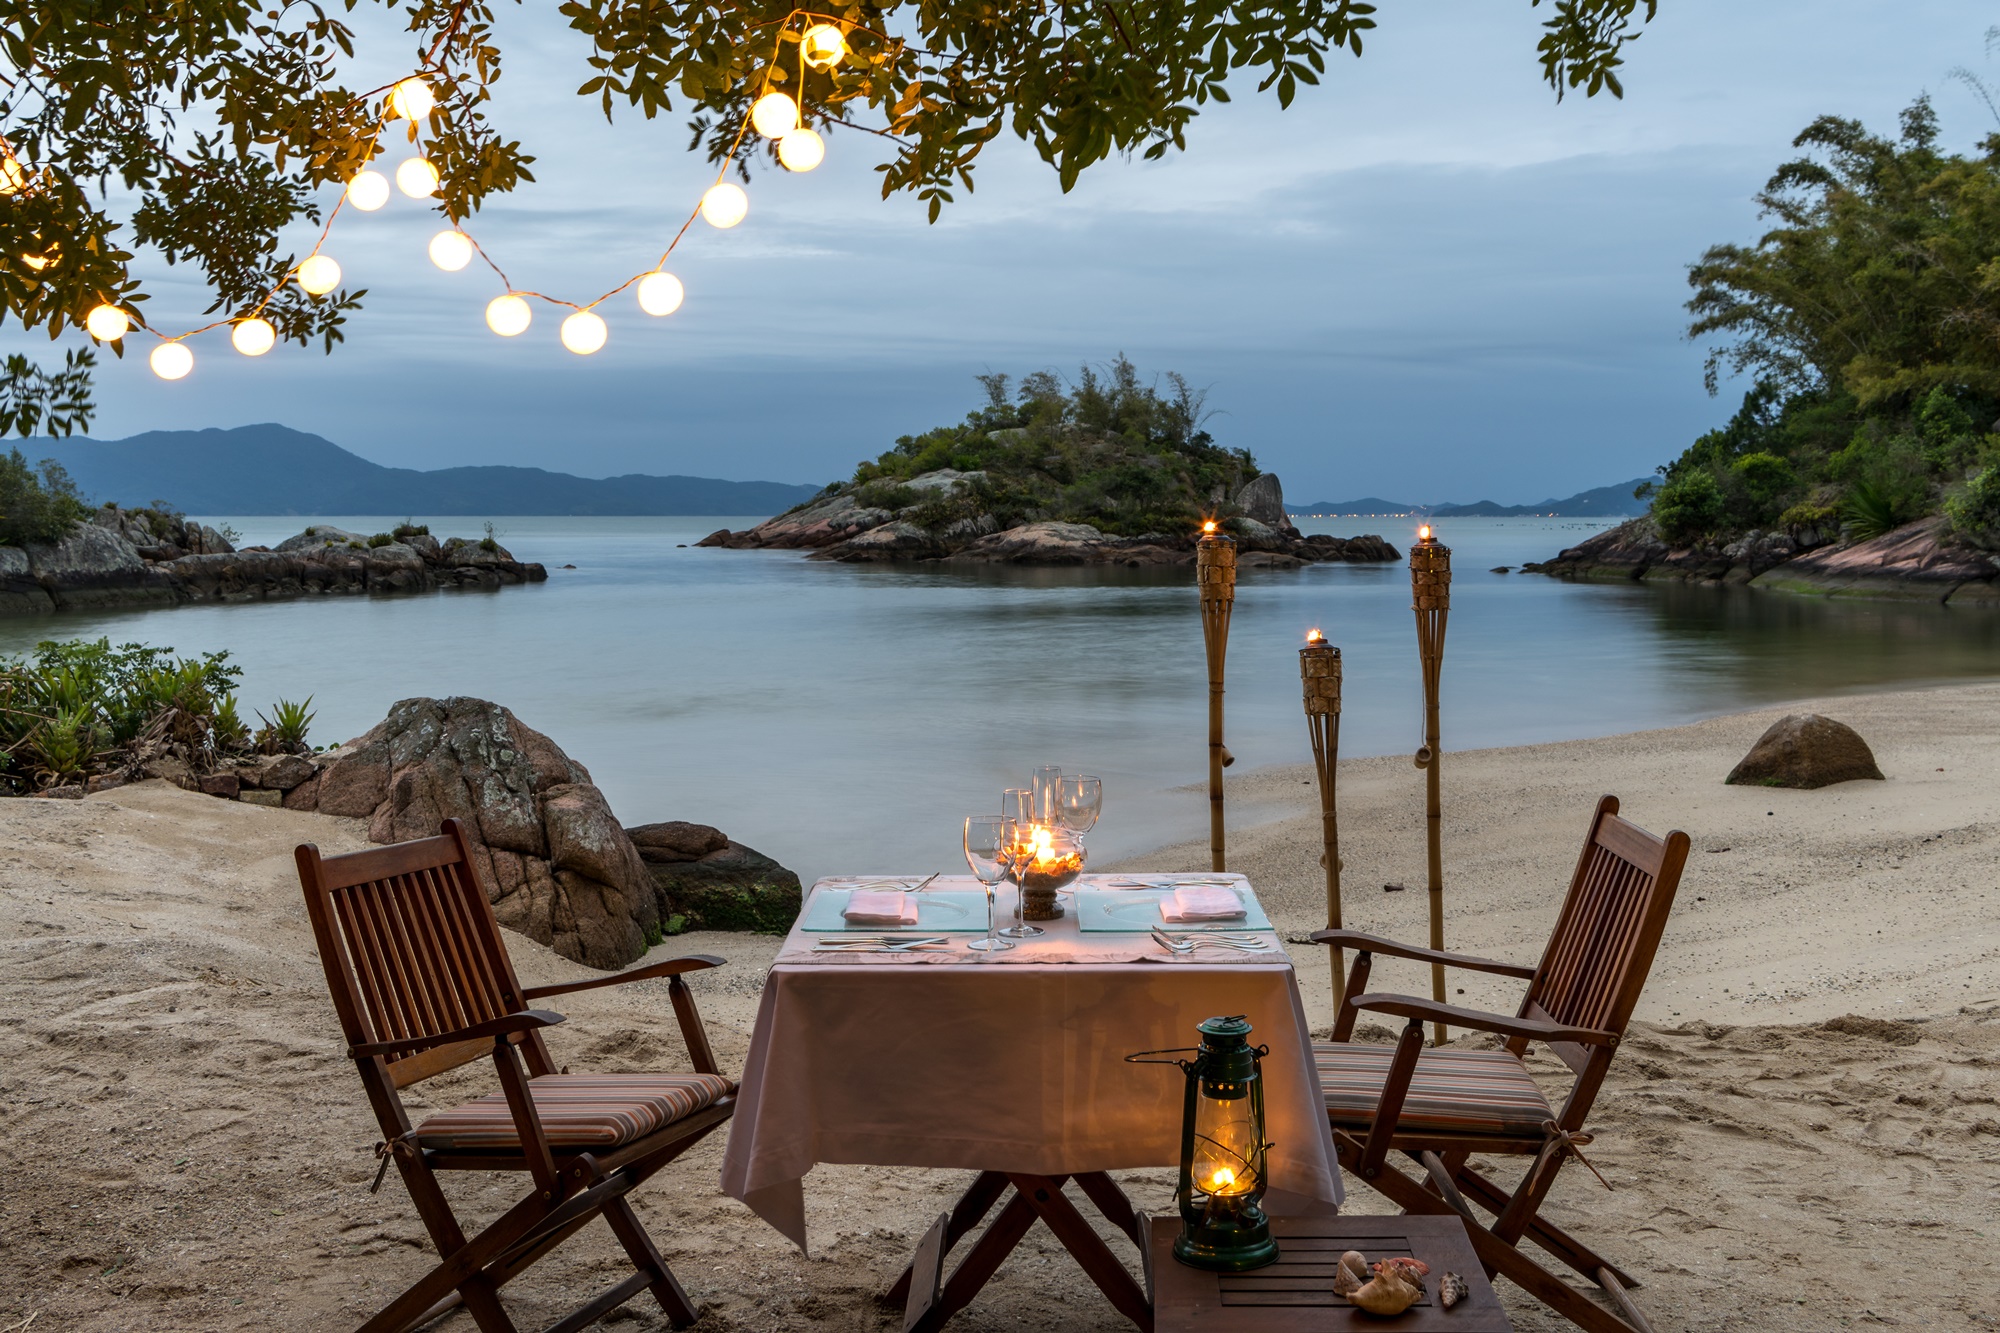 Mesa de jantar na praia, decorada com velas.